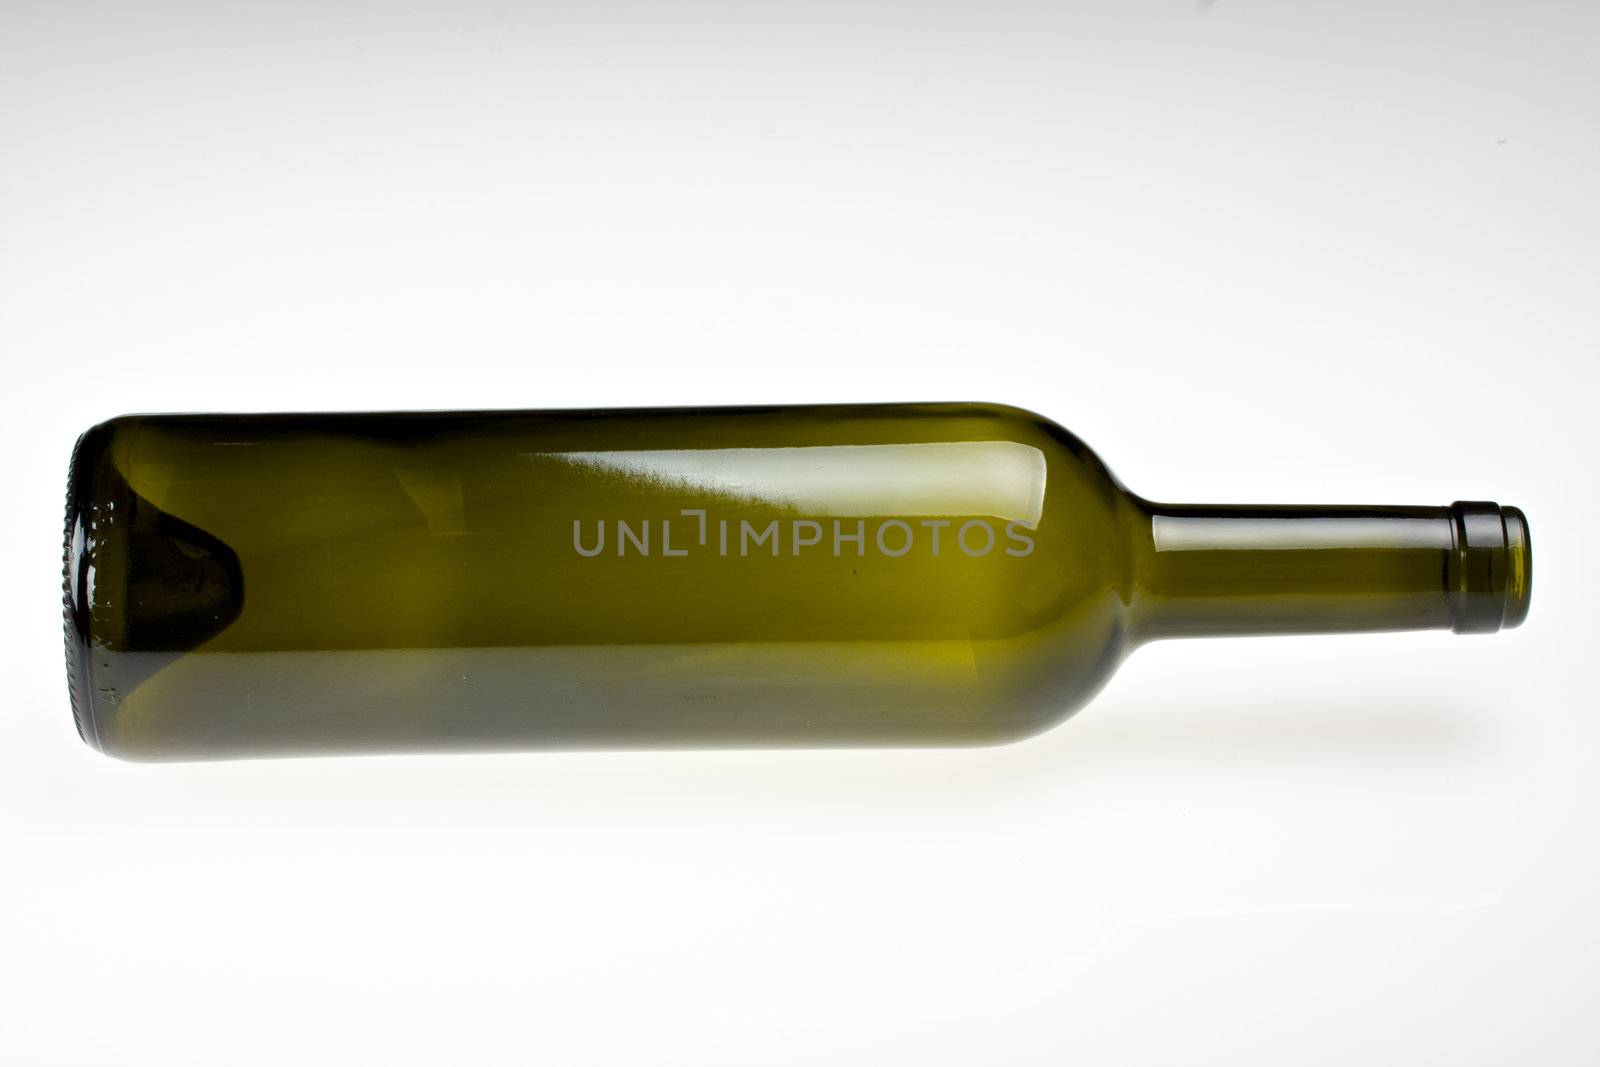 empty wine bottle lying on grey background by bernjuer